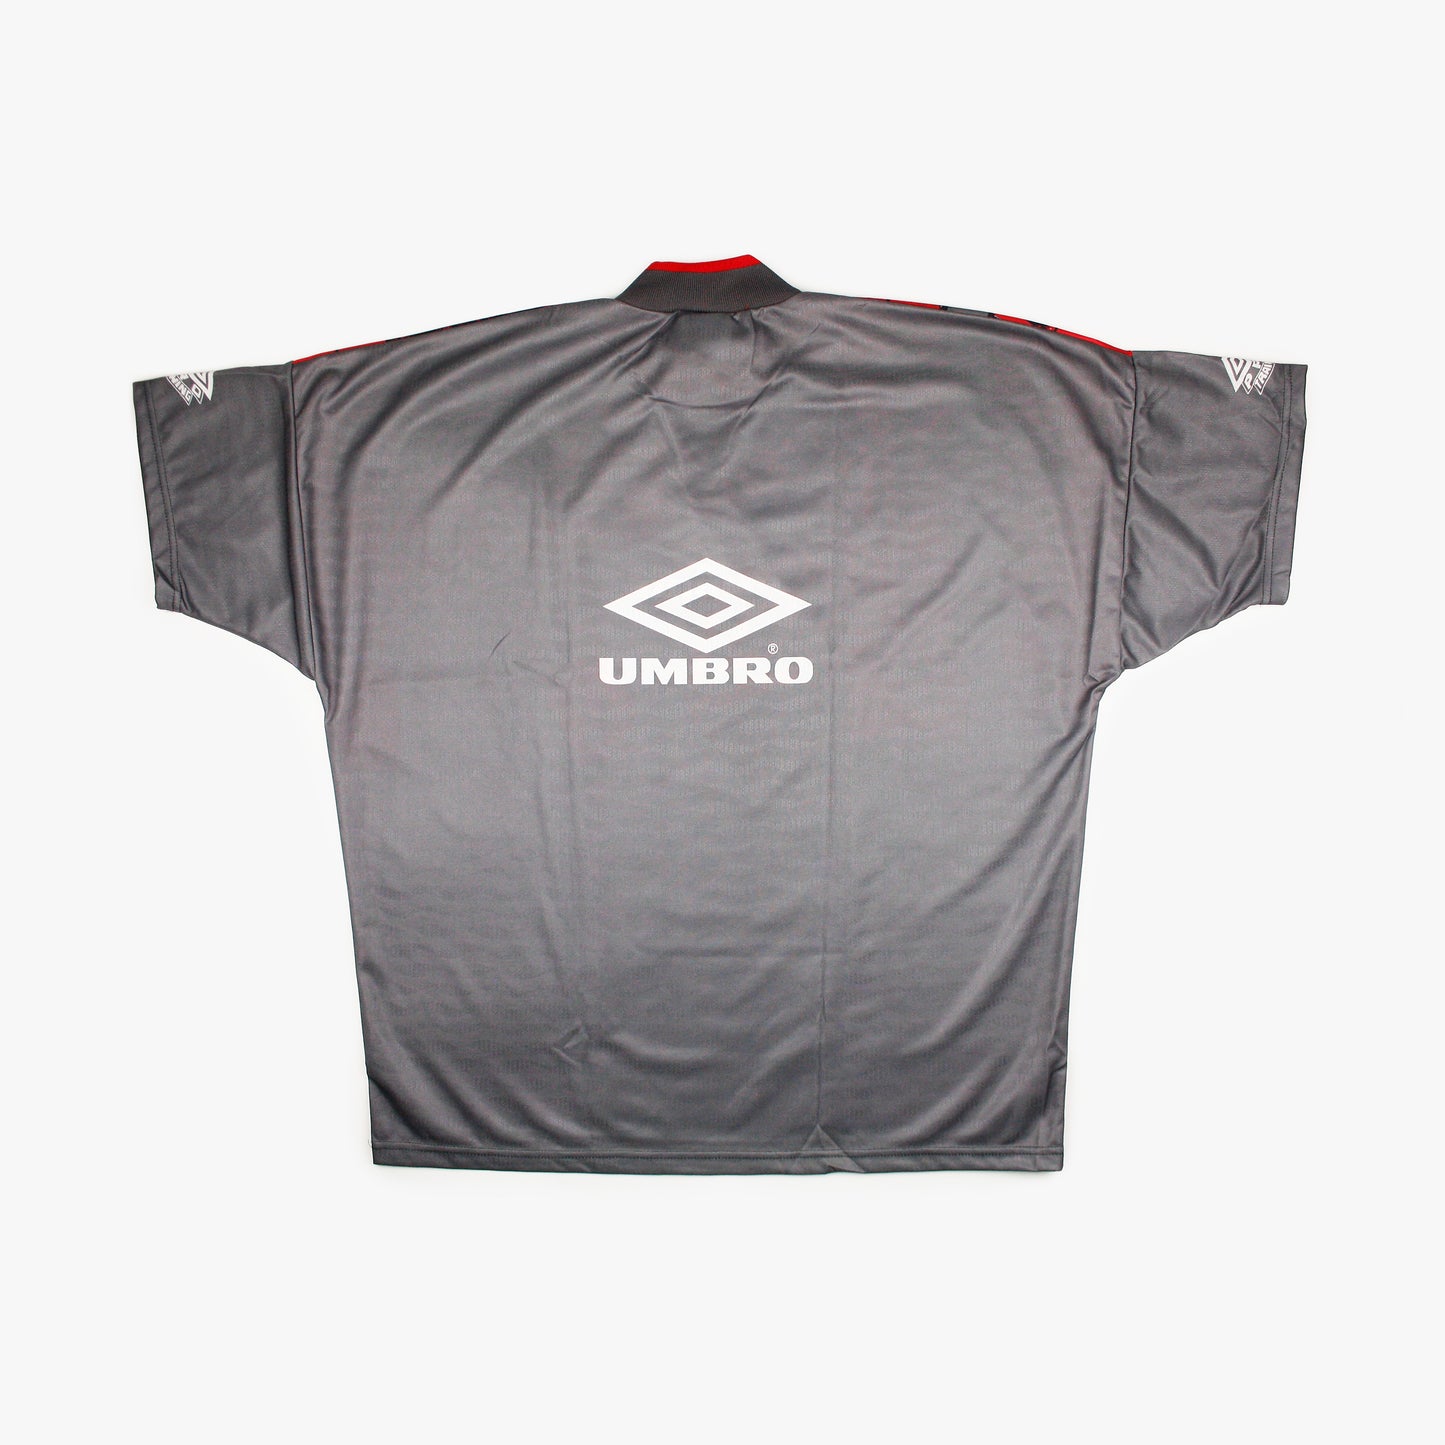 Umbro Eurocopa '96 Pro Training • Camiseta Genérica *Con Etiquetas* • L